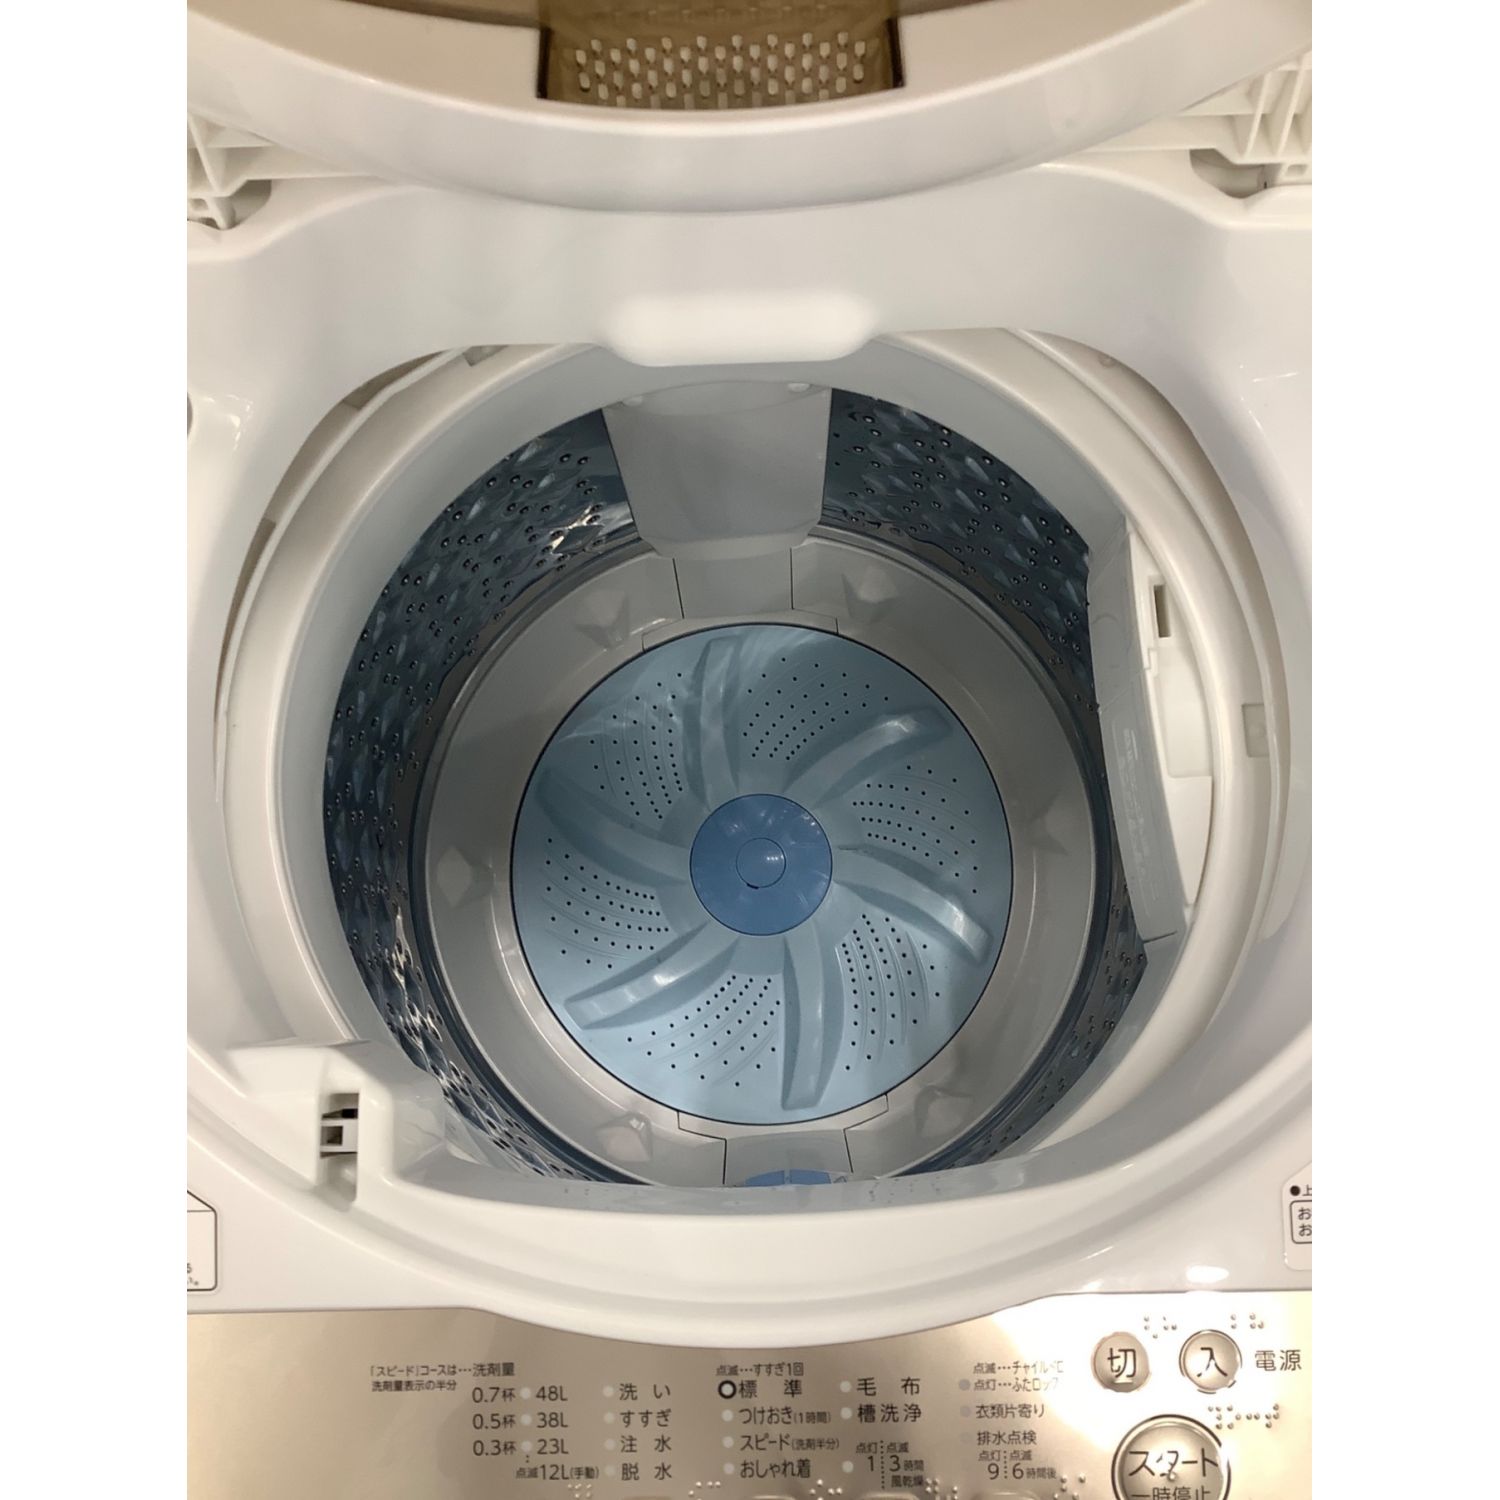 ☆ 東芝 TOSHIBA 全自動洗濯機 AW-705 5.0kg 2013年製 ☆ - 生活家電